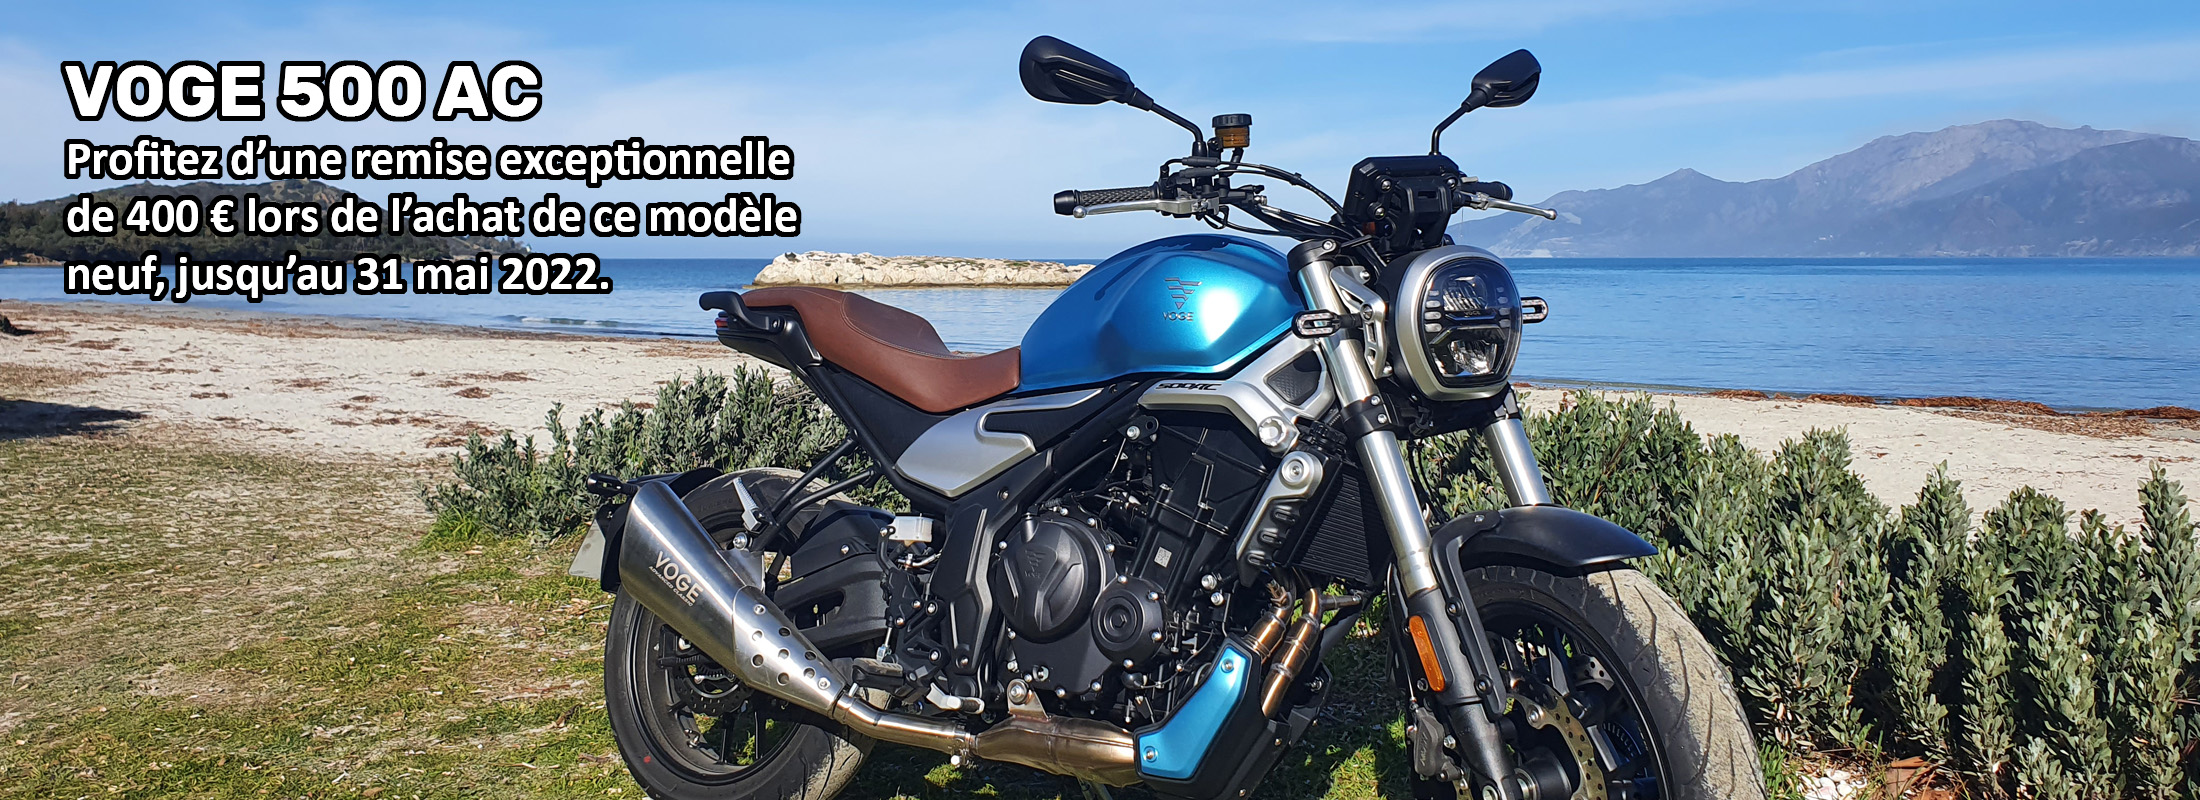 Kalimotard, ta nouvelle boutique d'accessoires moto en Corse